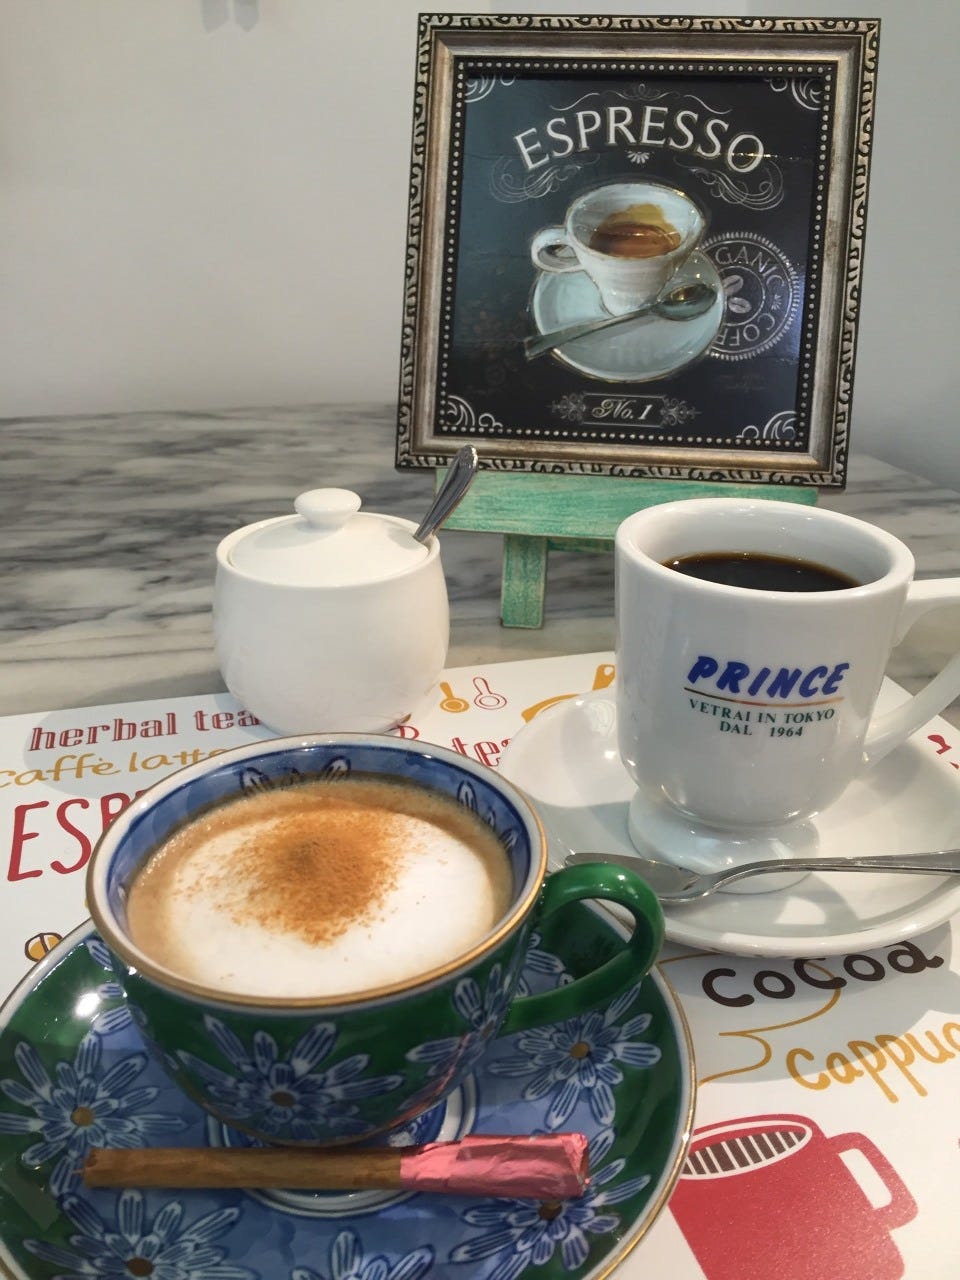 caffeprince image